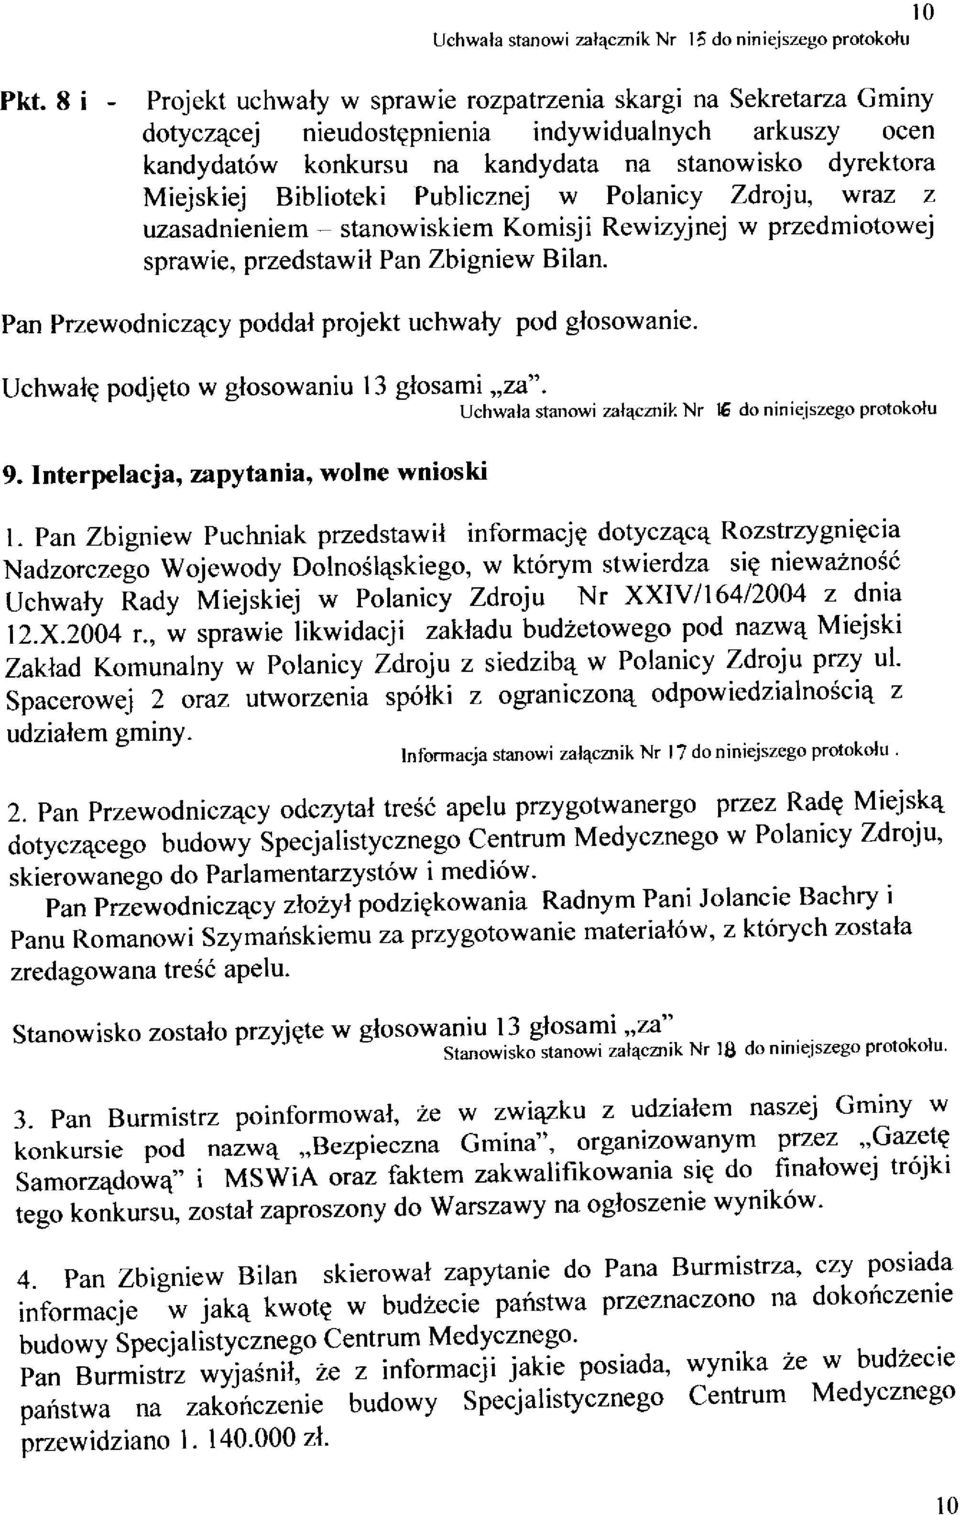 Biblioteki Publicznej w Polanicy Zdroju, wraz z uzasadnieniem - stanowiskiem Komisji Rewizyjnej w przedmiotowej sprawie, przedstawil Pan Zbigniew Bilan.